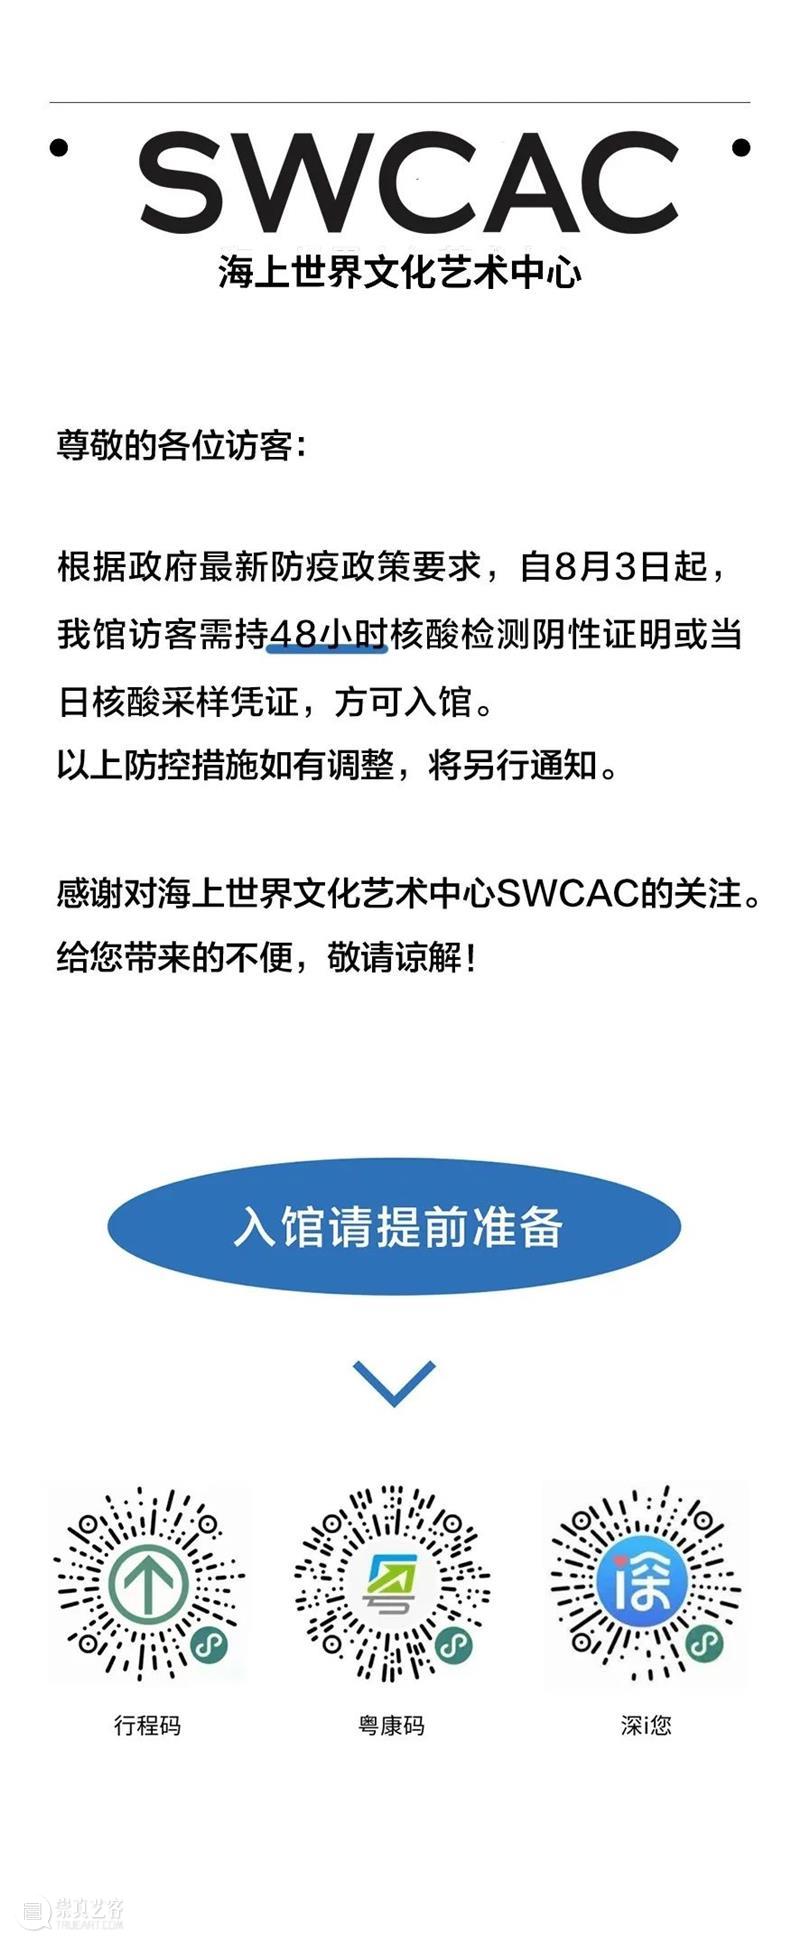 通知 | SWCAC疫情防控措施调整 崇真艺客